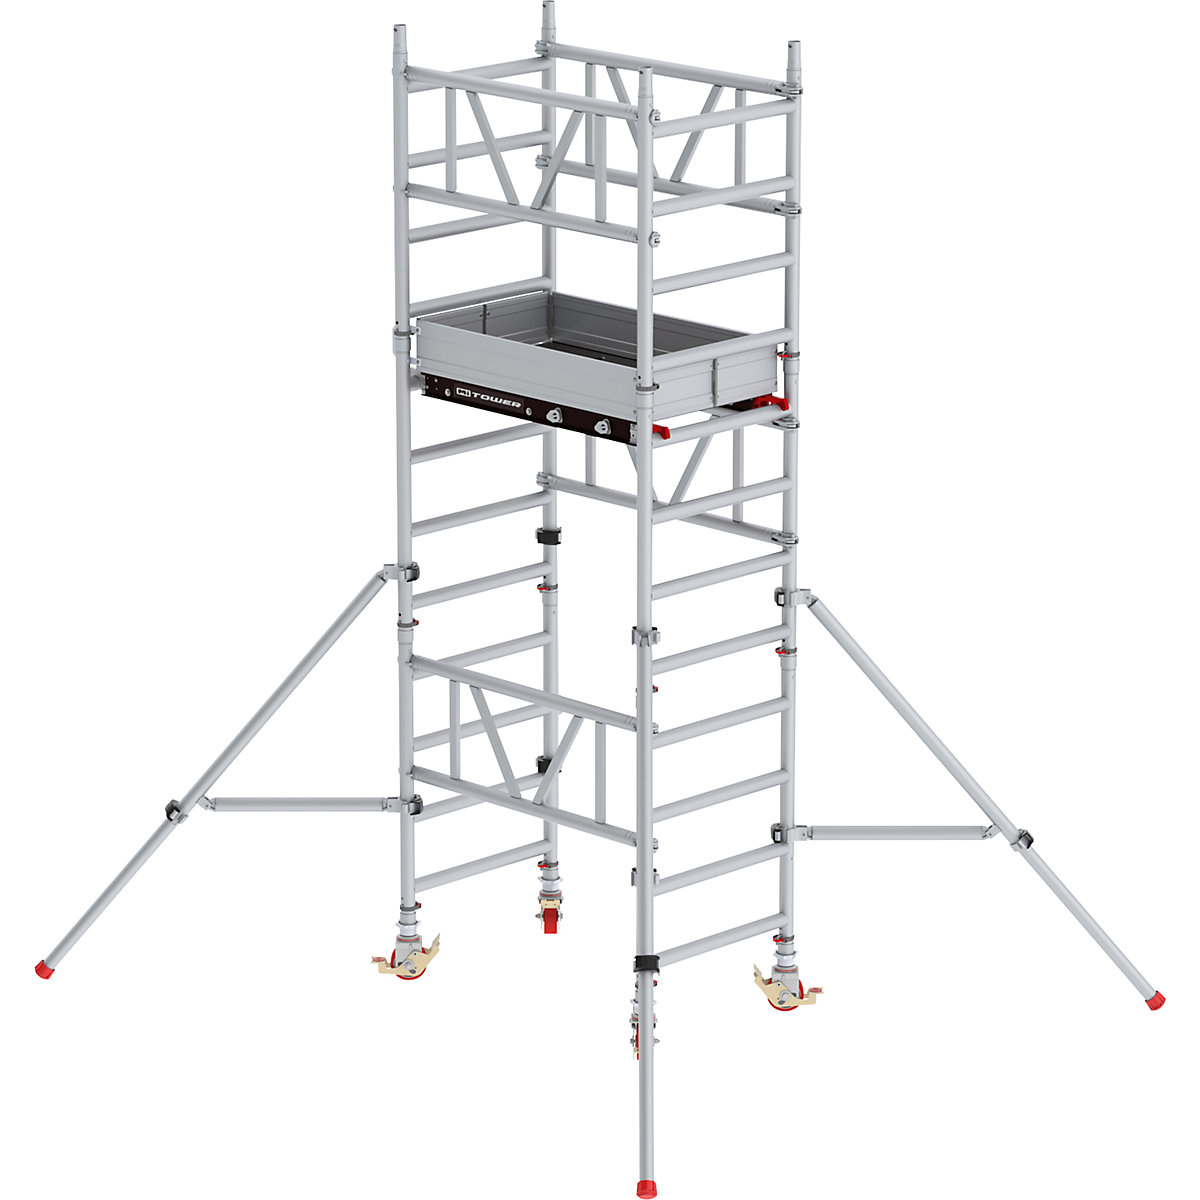 Schnellbau-Fahrgerüst MiTOWER Standard Altrex, Fiber-Deck®-Plattform, LxB 1200 x 750 mm, Arbeitshöhe 4 m